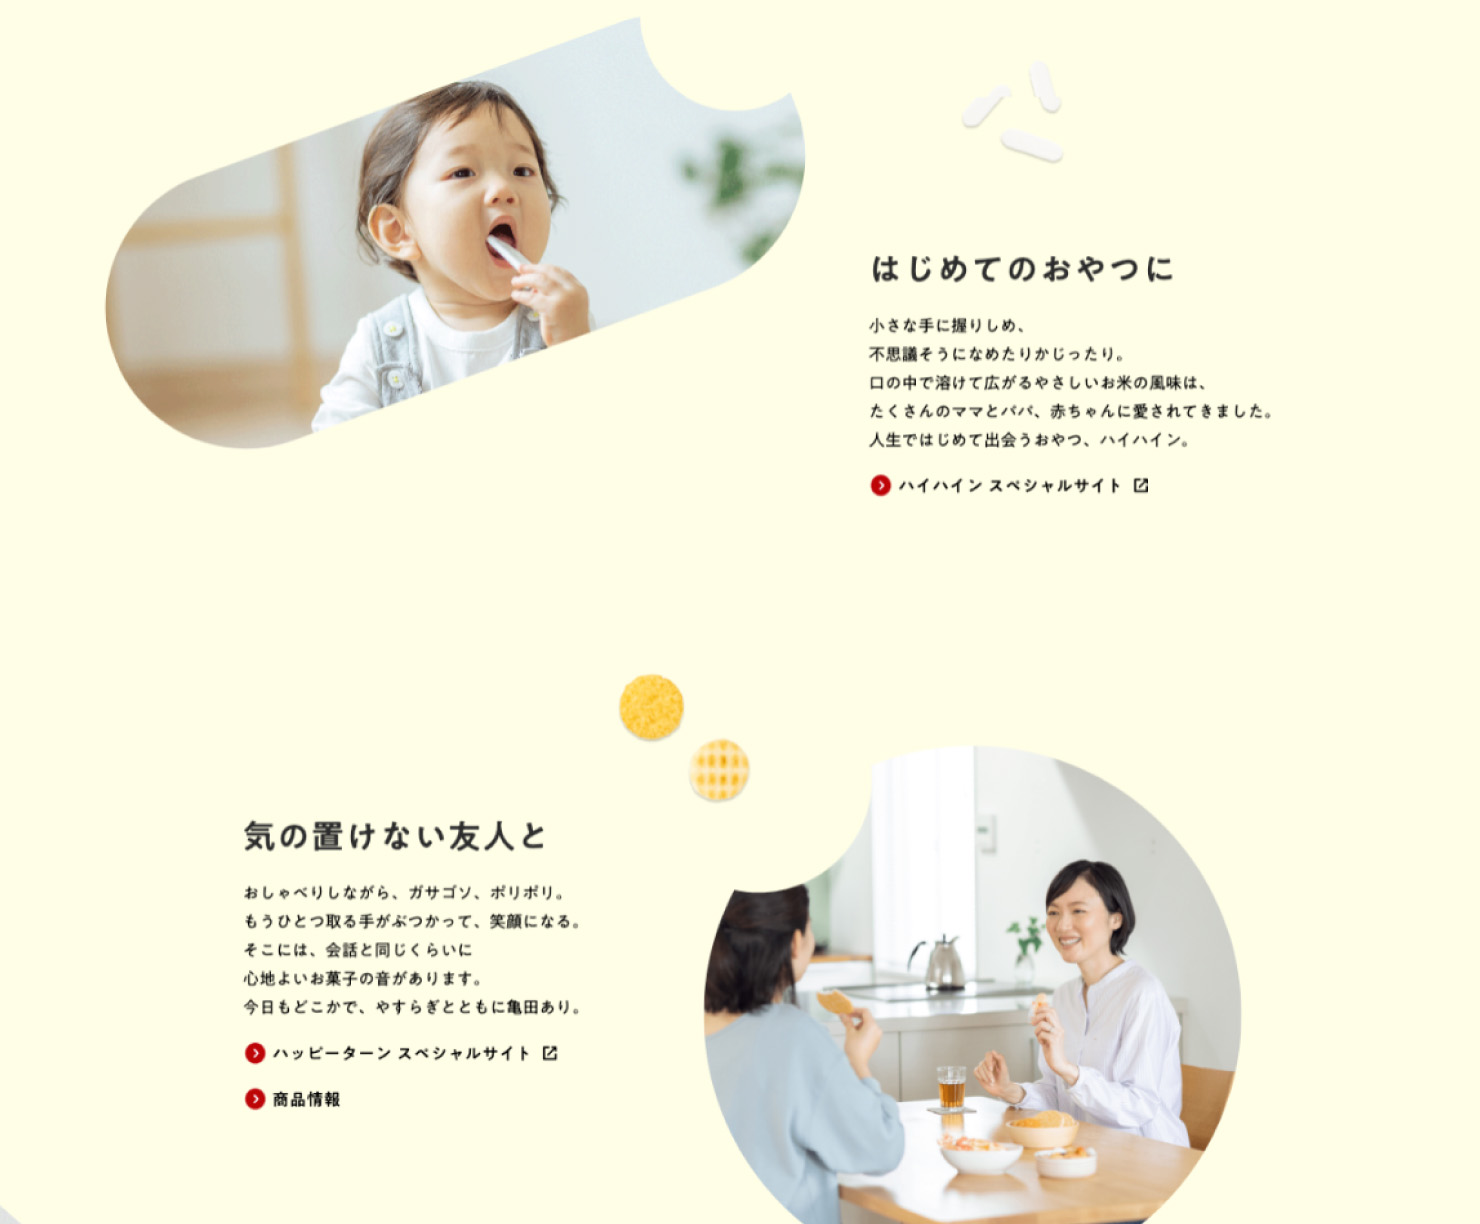 サイトキャプチャ：亀田製菓のBetter For Youページより一部抜粋赤ちゃんがお菓子を食べている写真と、「はじめてのおやつに」のメッセージ。母親が友人とお菓子を食べている写真と、「気の置けない友人と」のメッセージ。